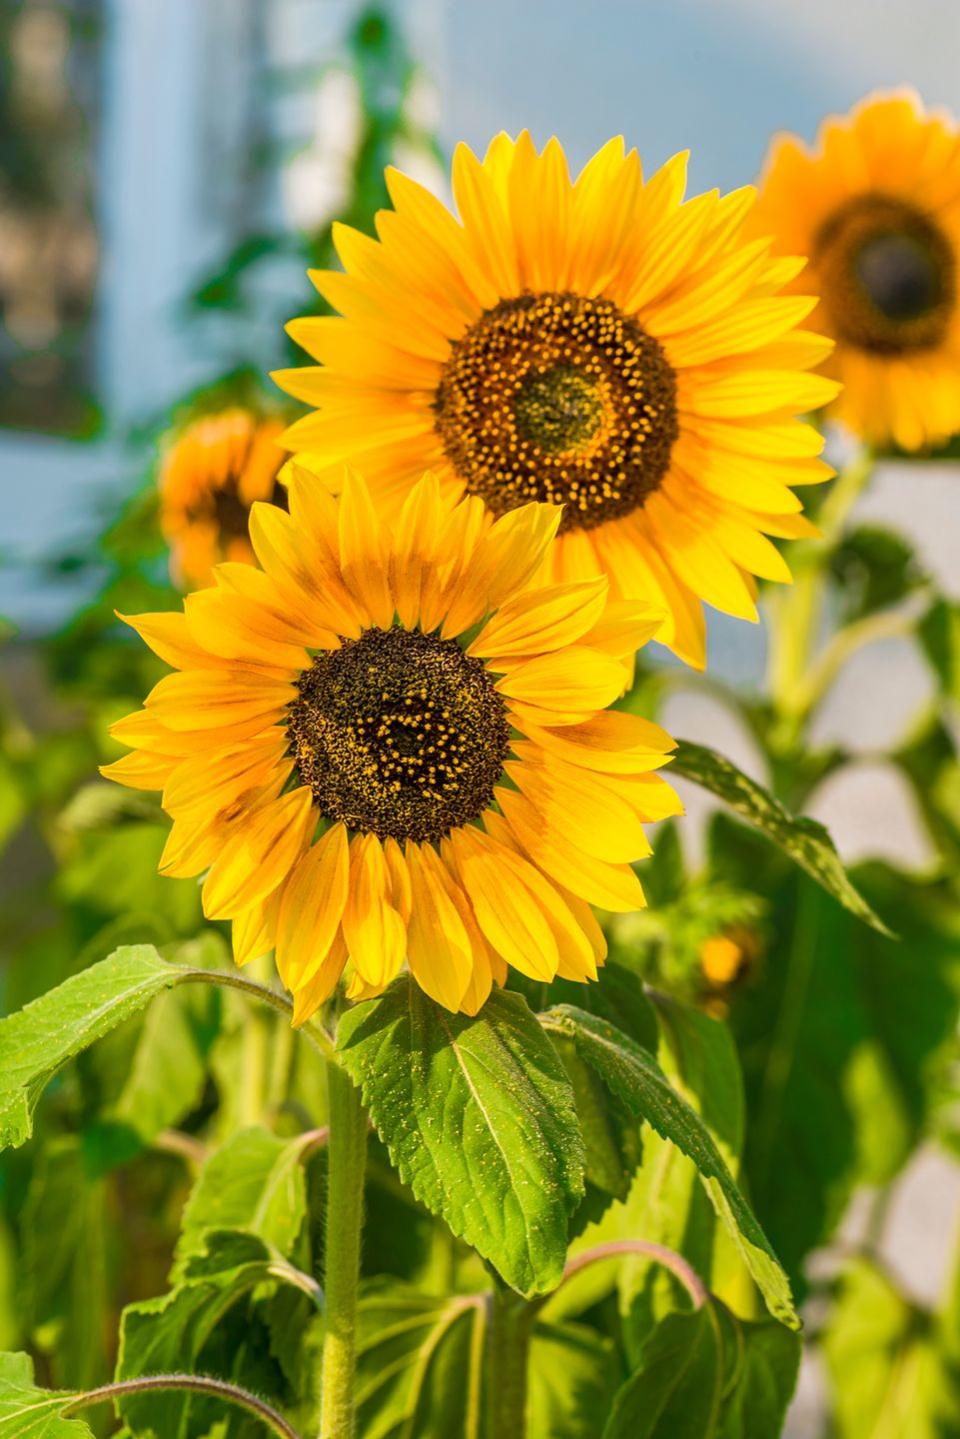 2) Sunflowers